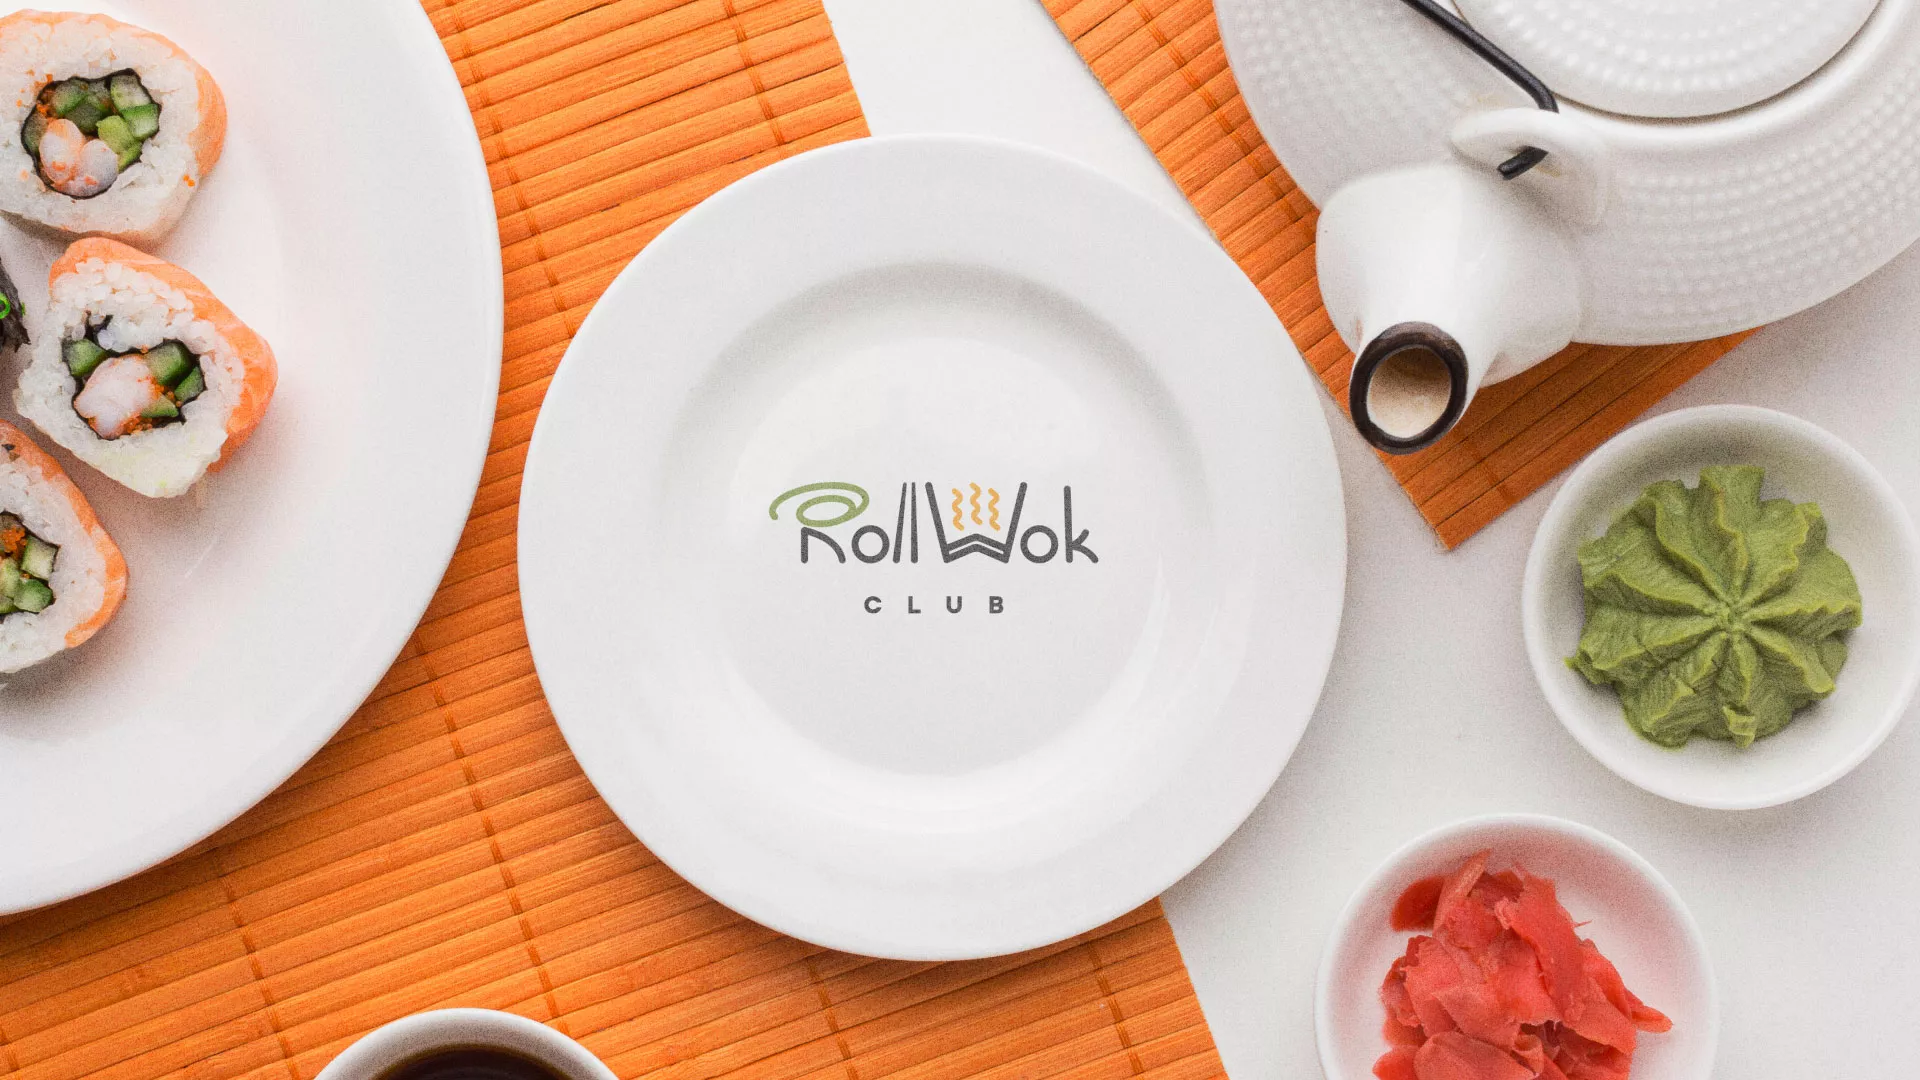 Разработка логотипа и фирменного стиля суши-бара «Roll Wok Club» в Медыни